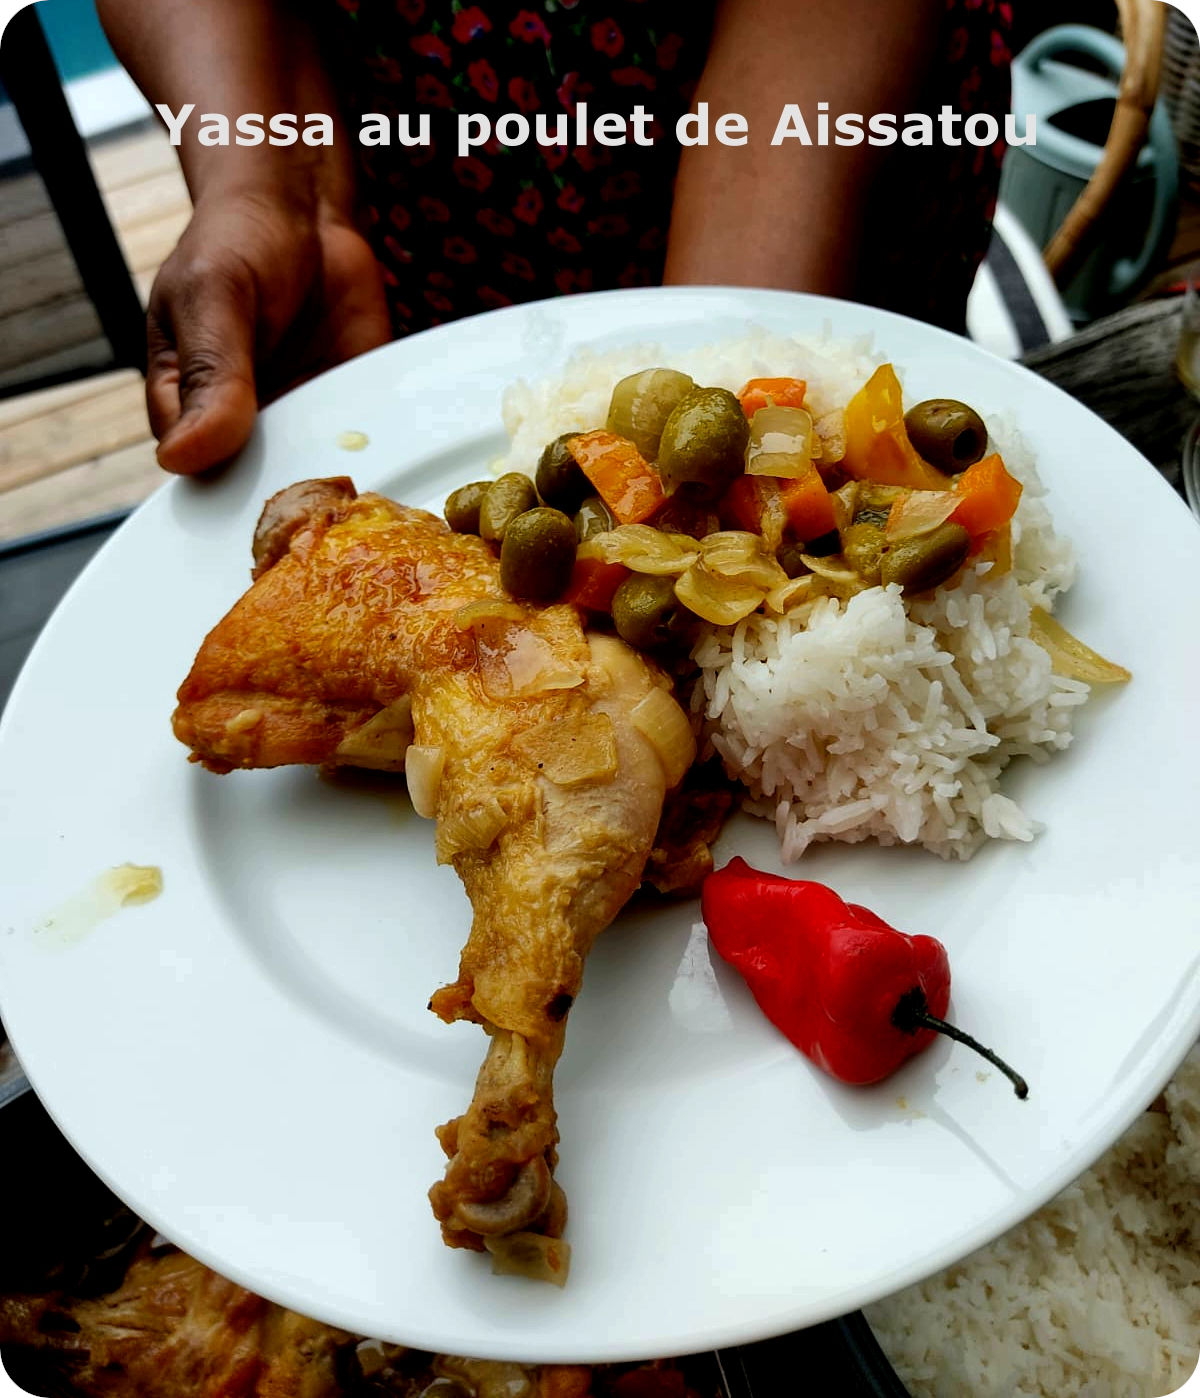 Yassa de Aissatou